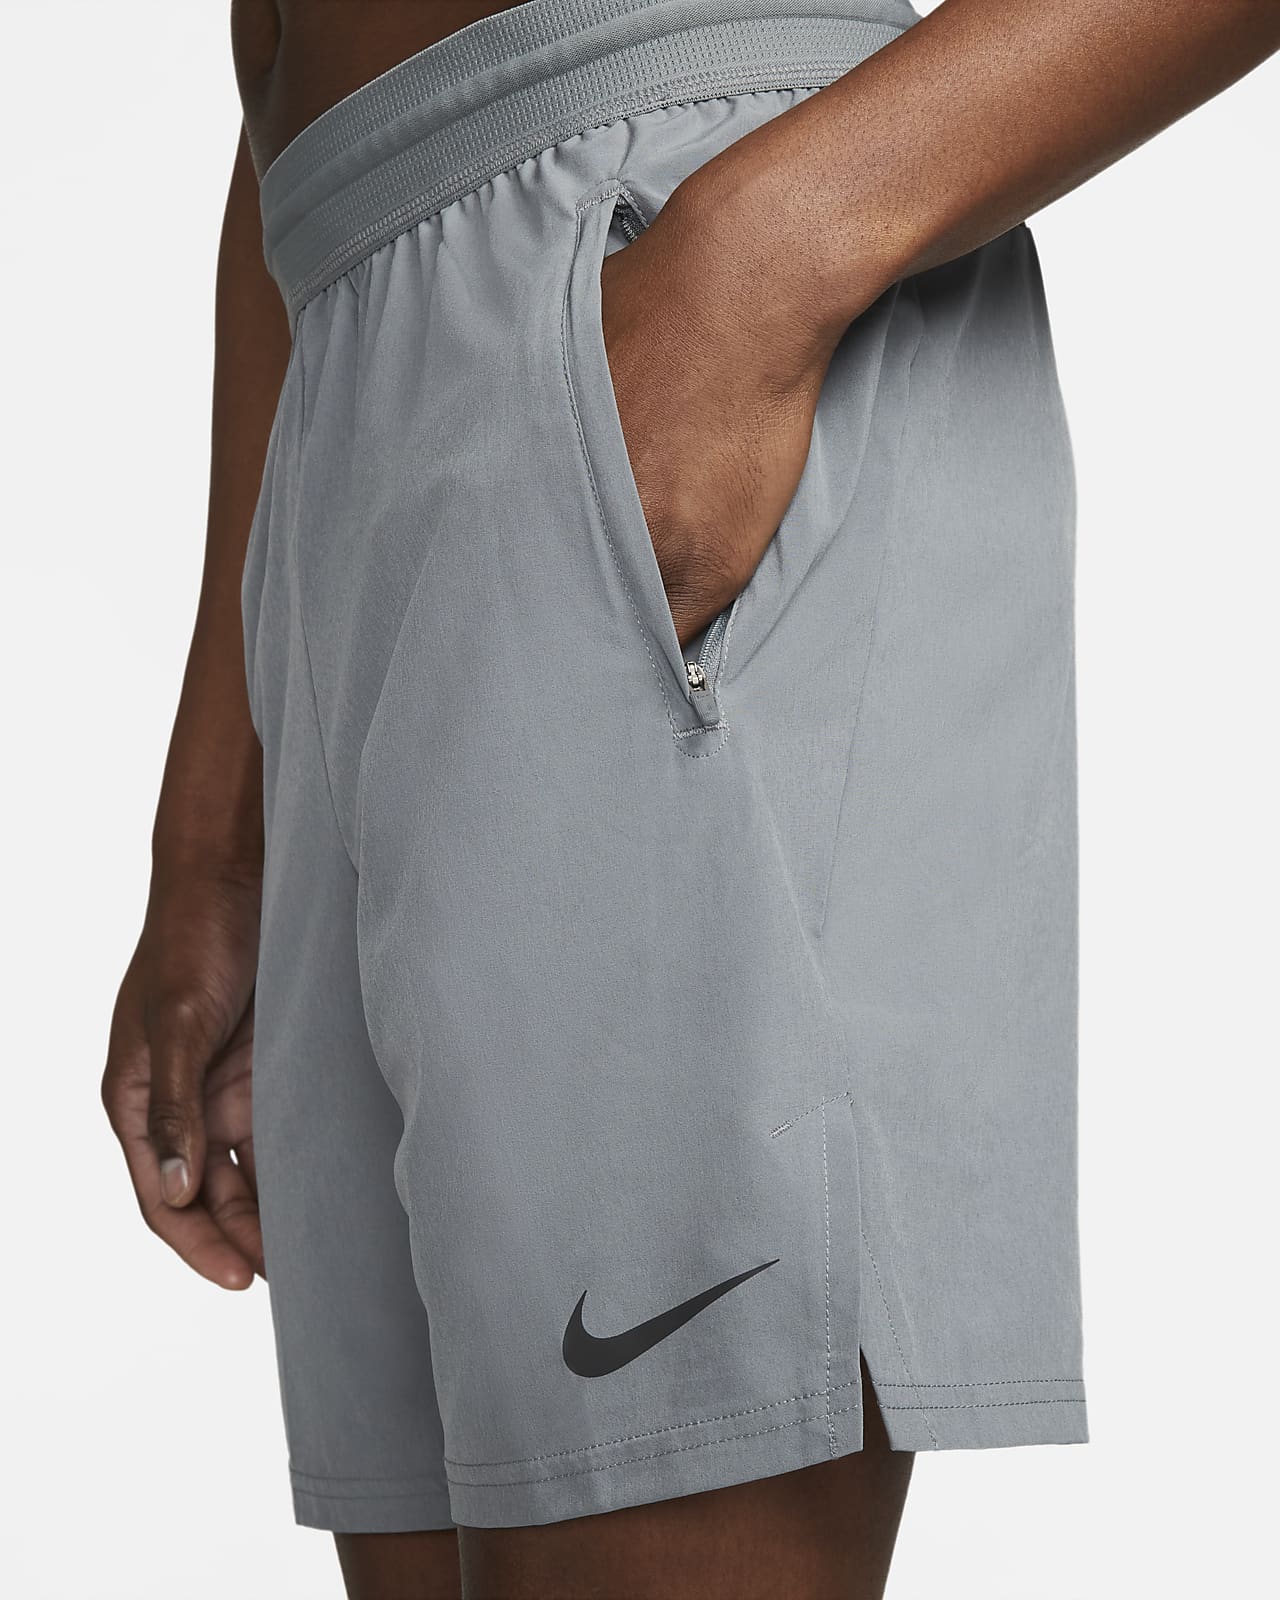 Nike Pro Dri-FIT Vent Max Men's 8" (20.5cm approx.) Training Shorts. Nike